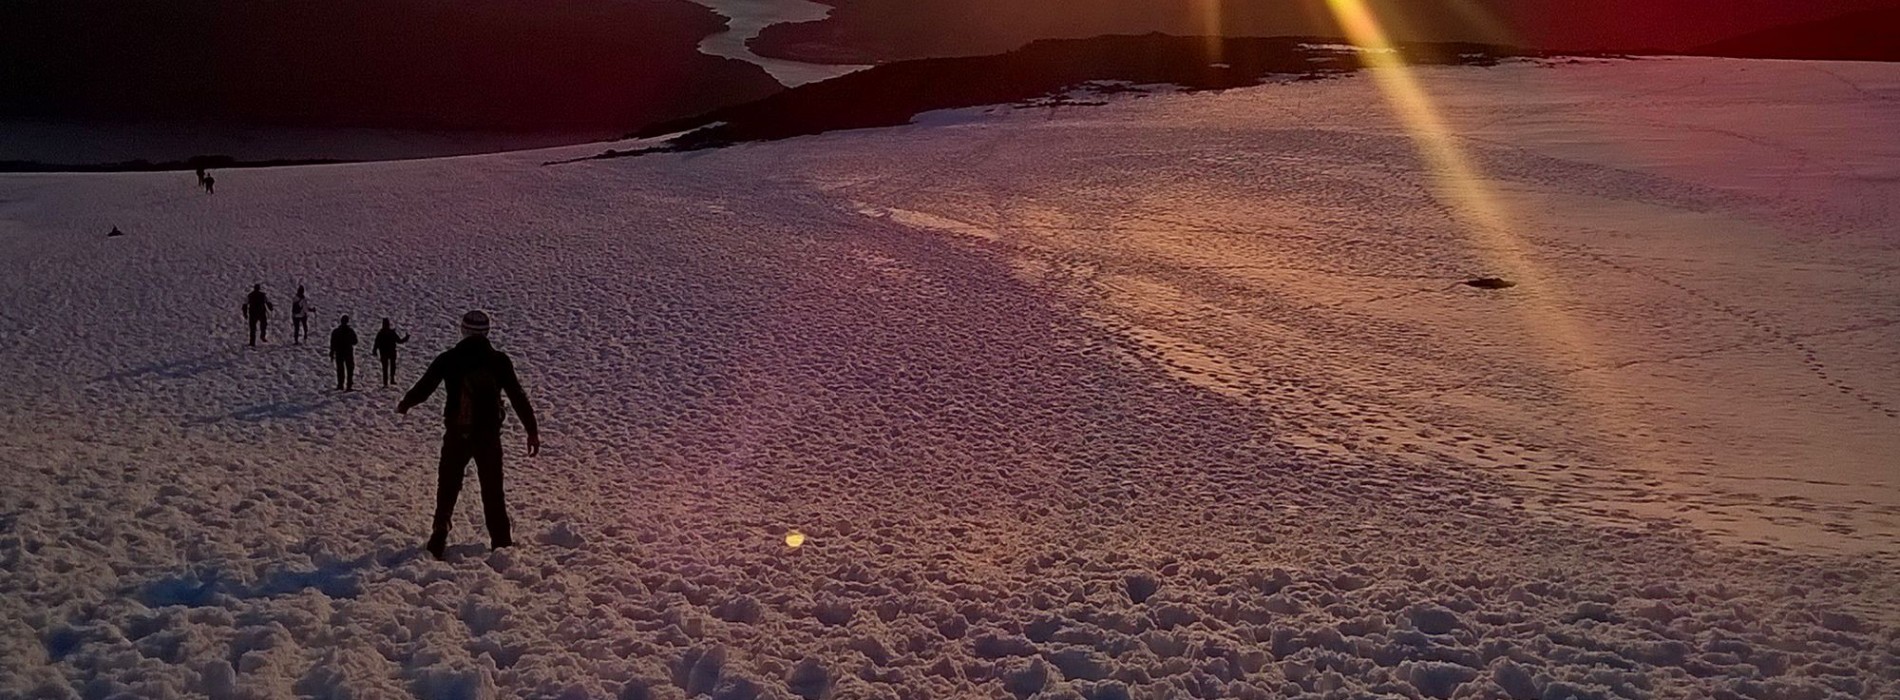 Sunrise over Ben Nevis summit